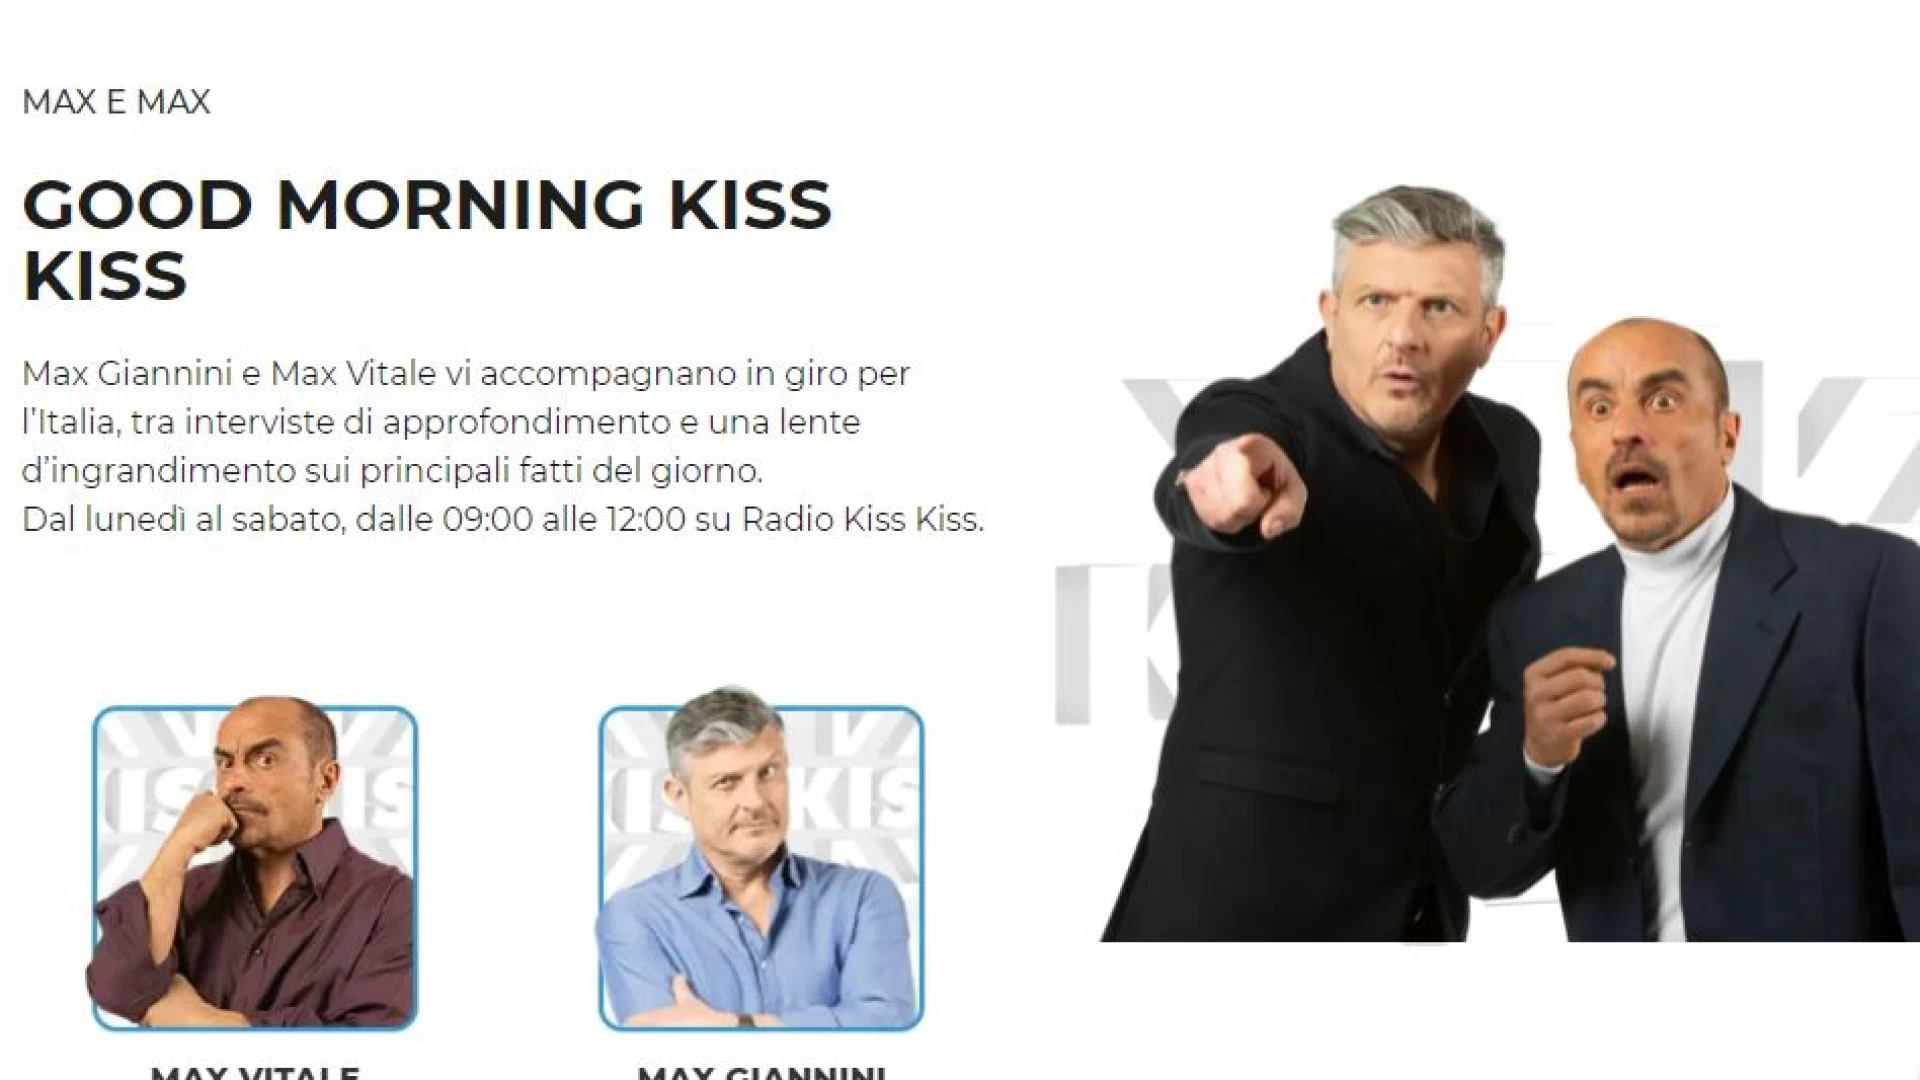 Fornelli: il Borgo Medievale protagonista questa mattina su Radio Kiss Kiss con una breve intervista rilasciata dal sindaco Tedeschi a Good Morning Kiss Kiss.